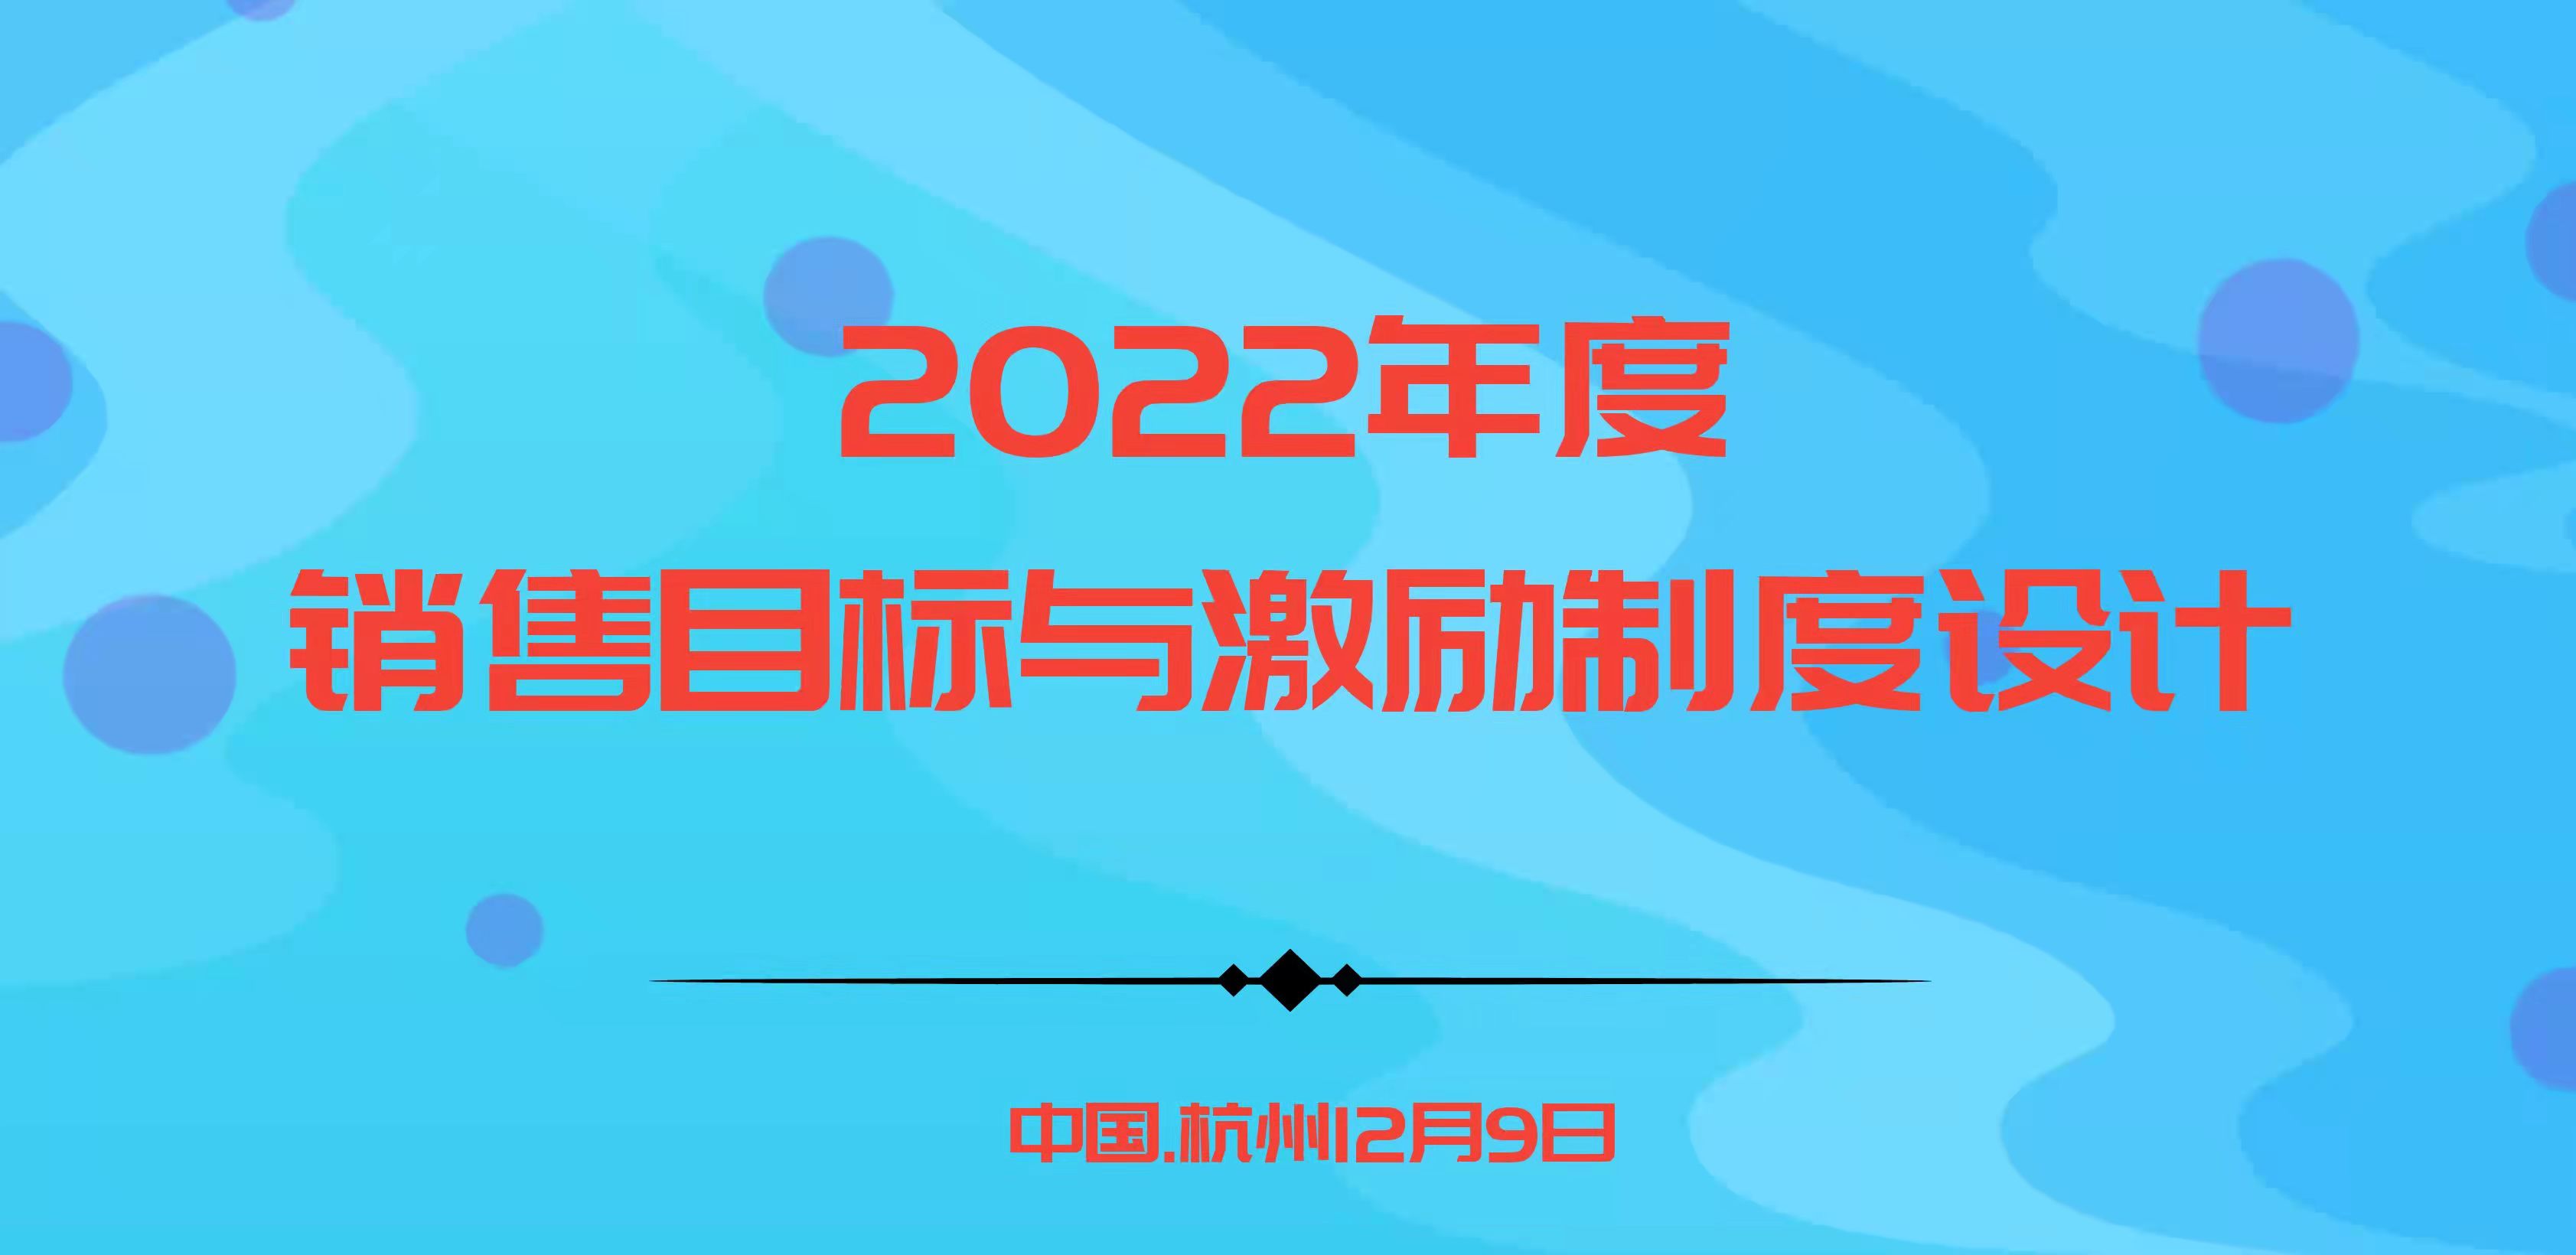 華為、阿里指定課程－2022年度銷售目標與激勵制度設計 |杭州12.9歐圖歐商學院